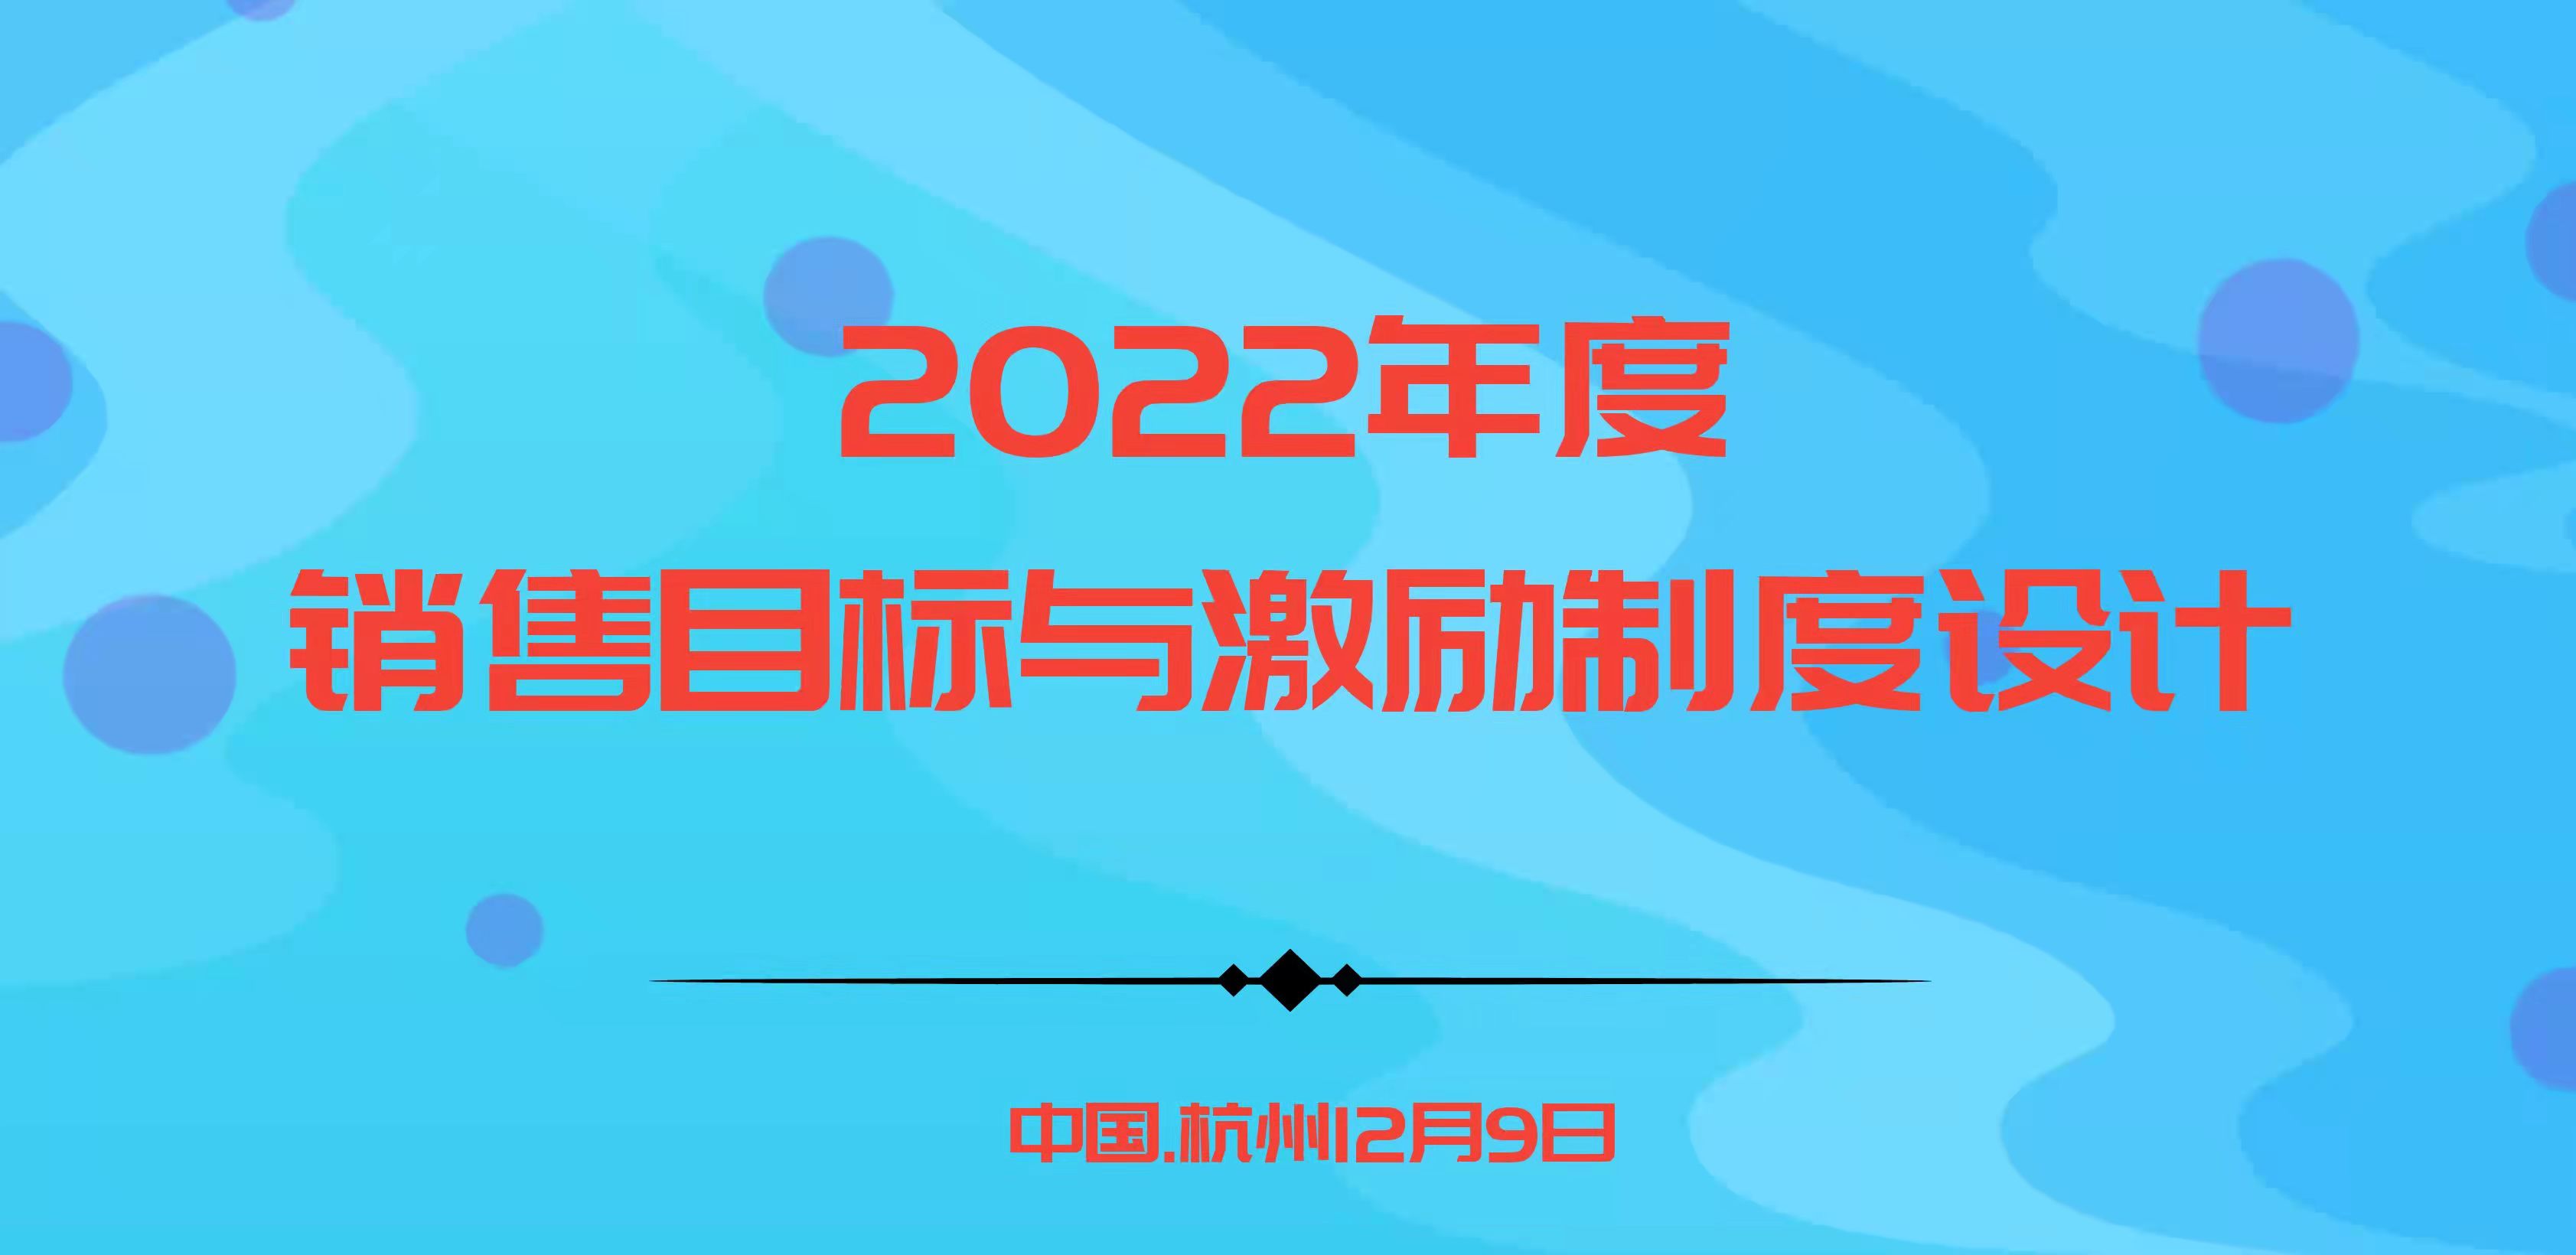 華為、阿里指定課程－2022年度銷售目標與激勵制度設計 |杭州12.9歐圖歐商學院